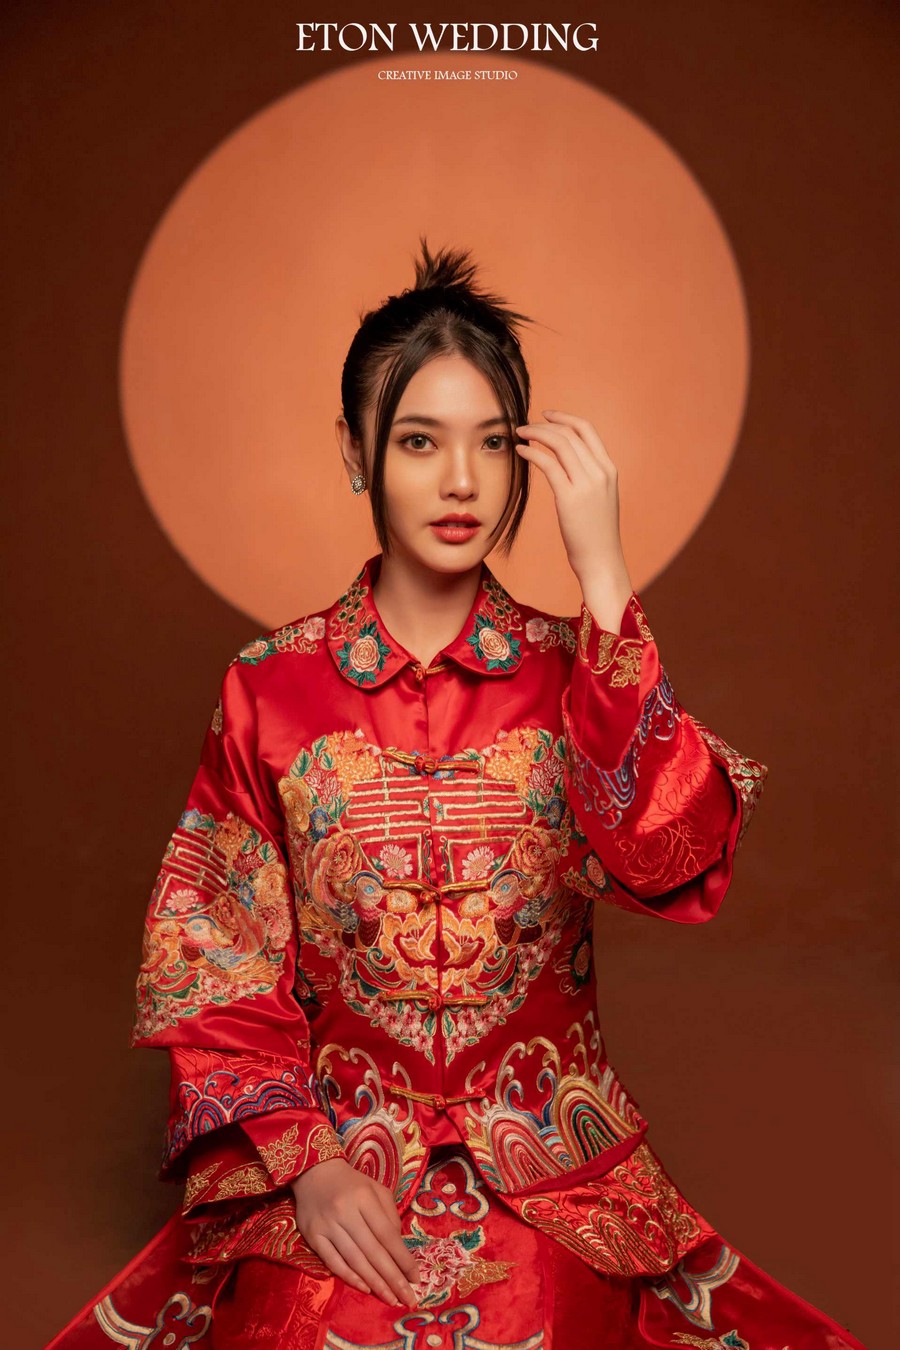 中式婚紗,中式婚紗照,中式秀禾服,中式禮服,中式個人寫真,中式全家福,中式閨蜜寫真